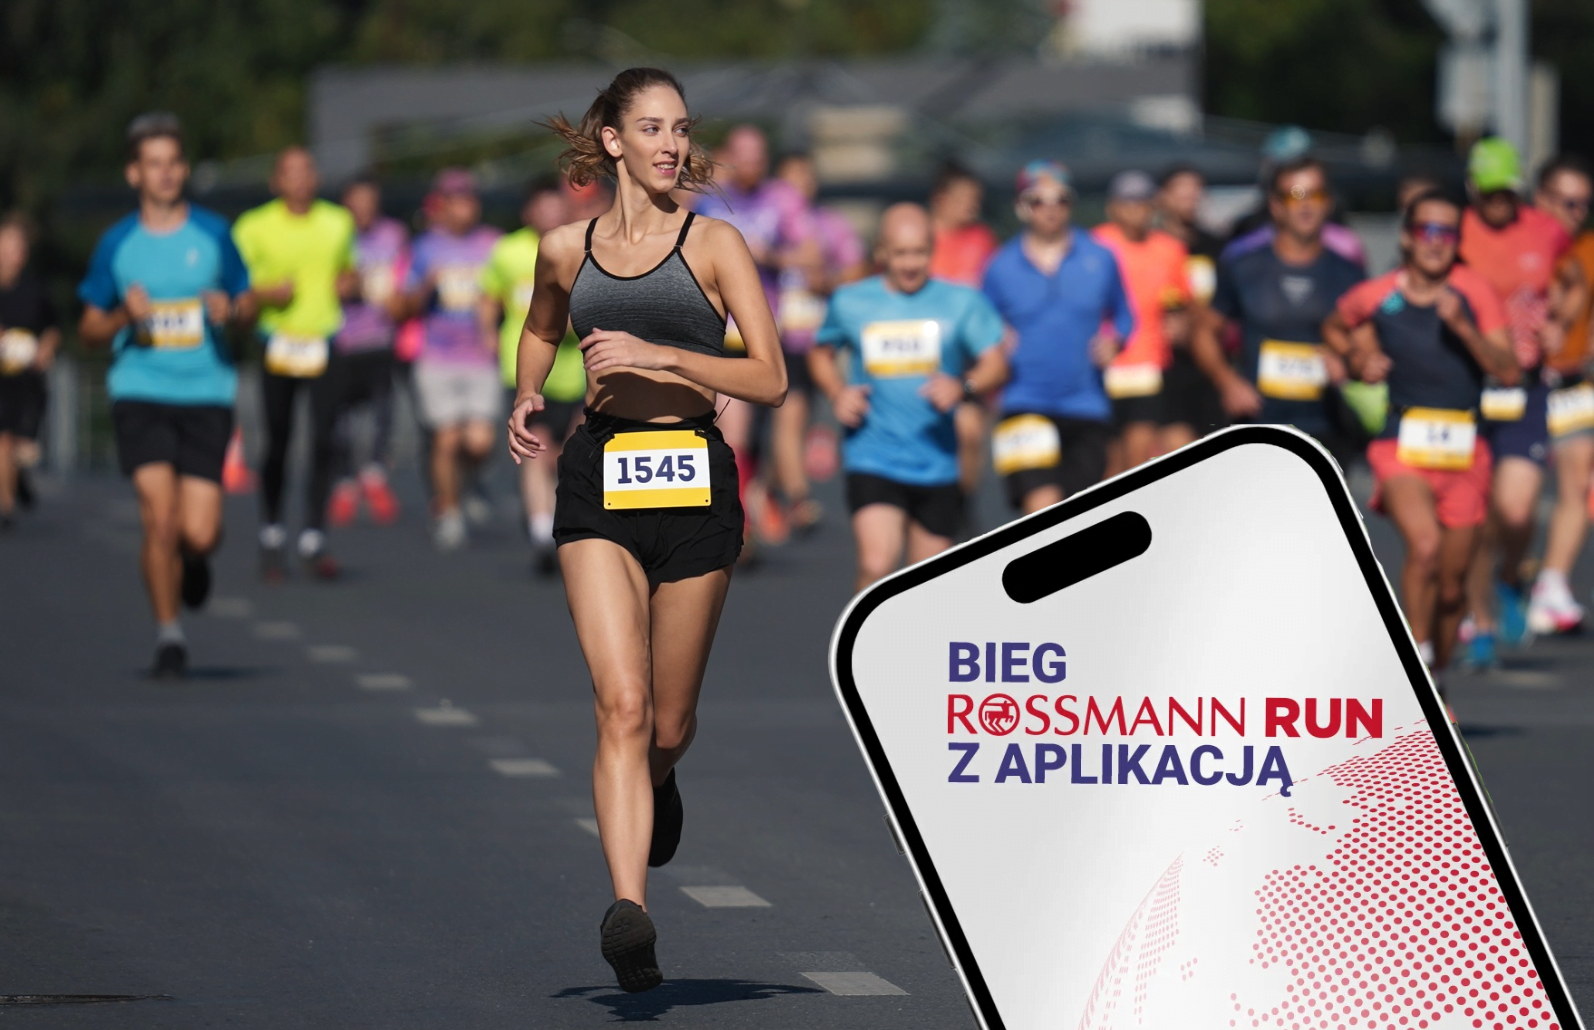 Grupa biegaczy w biegu ulicznym, na pierwszym planie kobieta z numerem 1545. W prawym dolnym rogu grafika z tekstem "Bieg Rossmann Run z aplikacją".